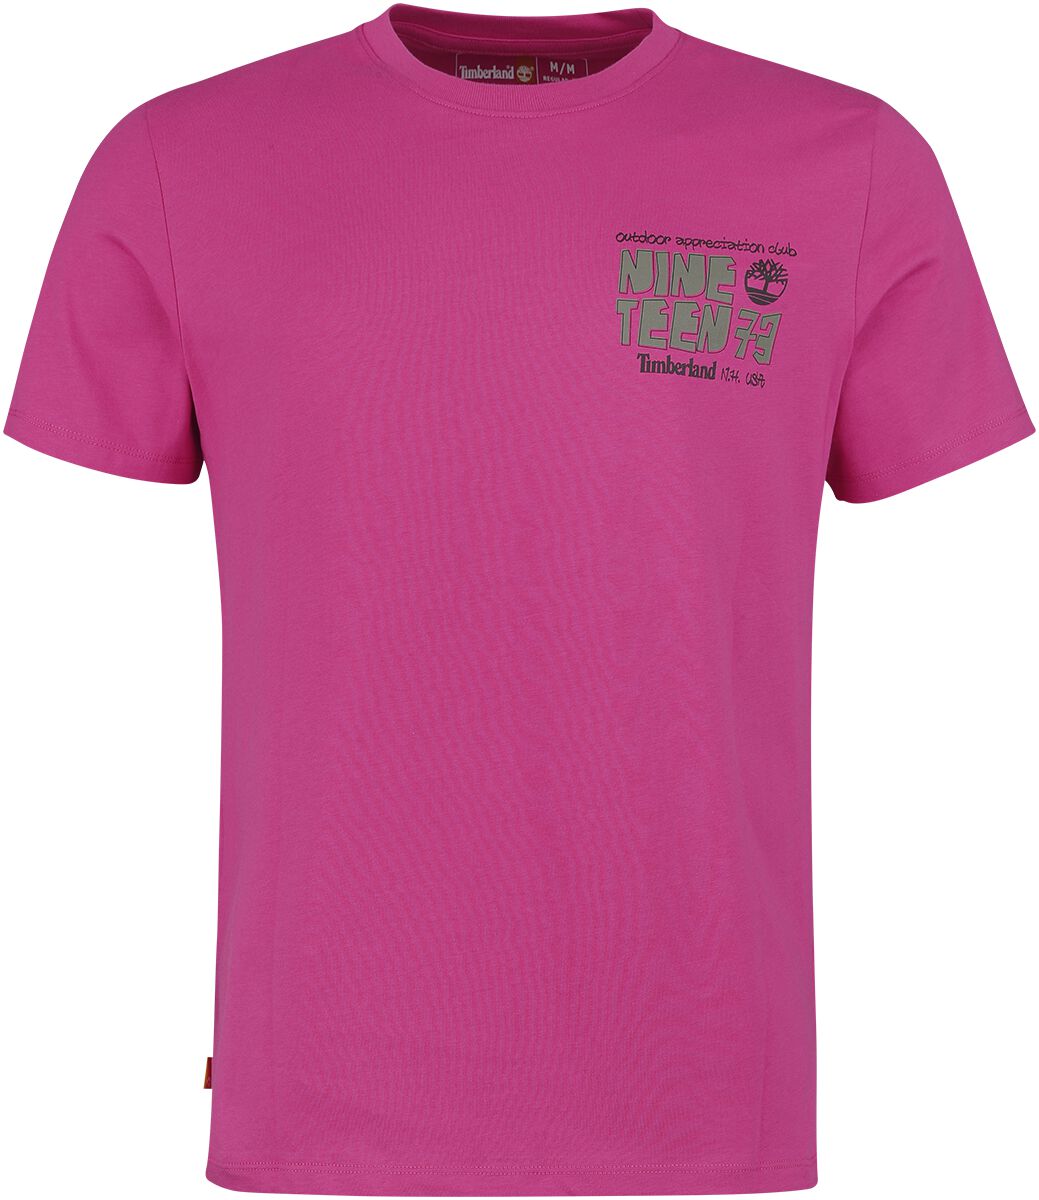 Timberland T-Shirt - Outdoor Back Graphic Tee - S bis L - für Männer - Größe S - pink